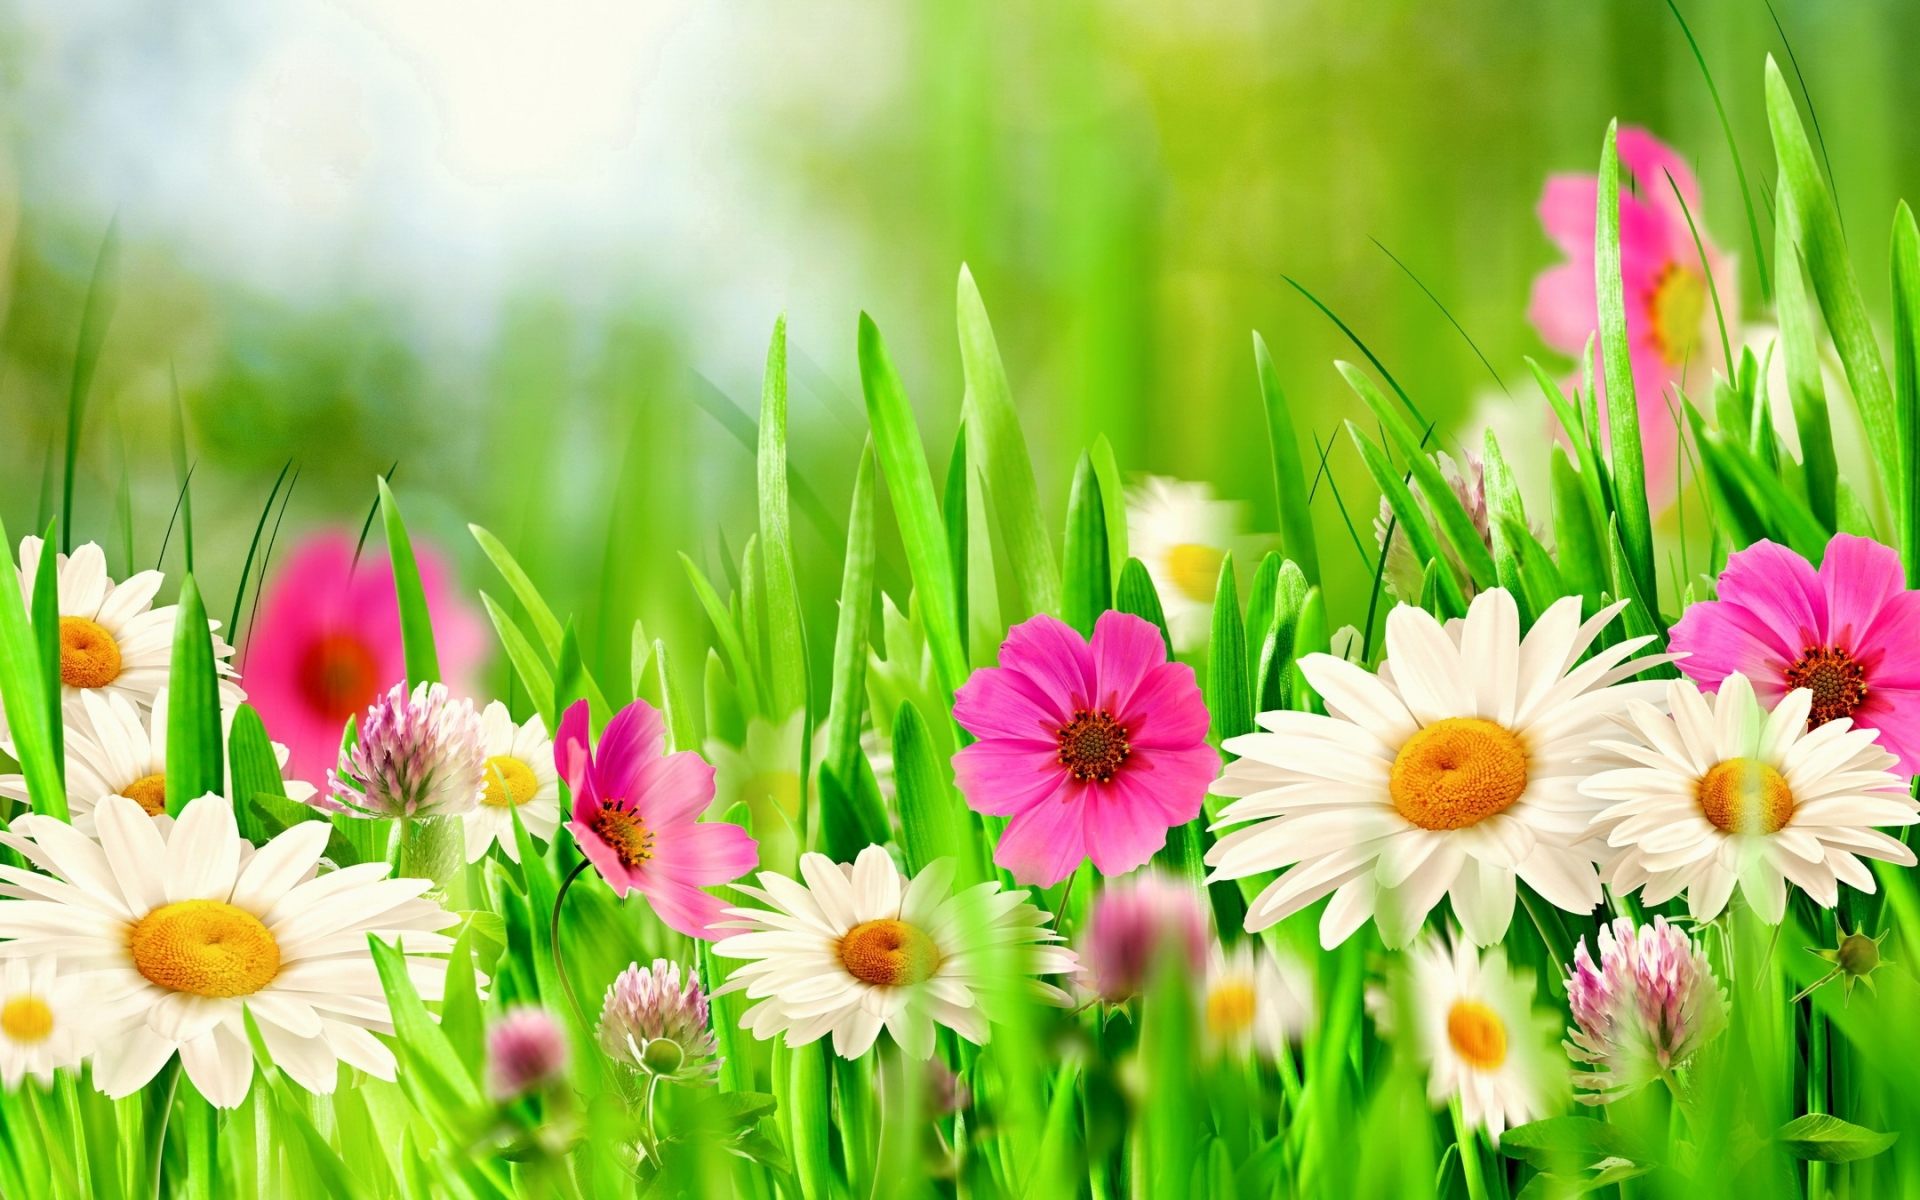 Скачать обои бесплатно Трава, Цветок, Весна, Белый Цветок, Художественные, Розовый Цветок картинка на рабочий стол ПК